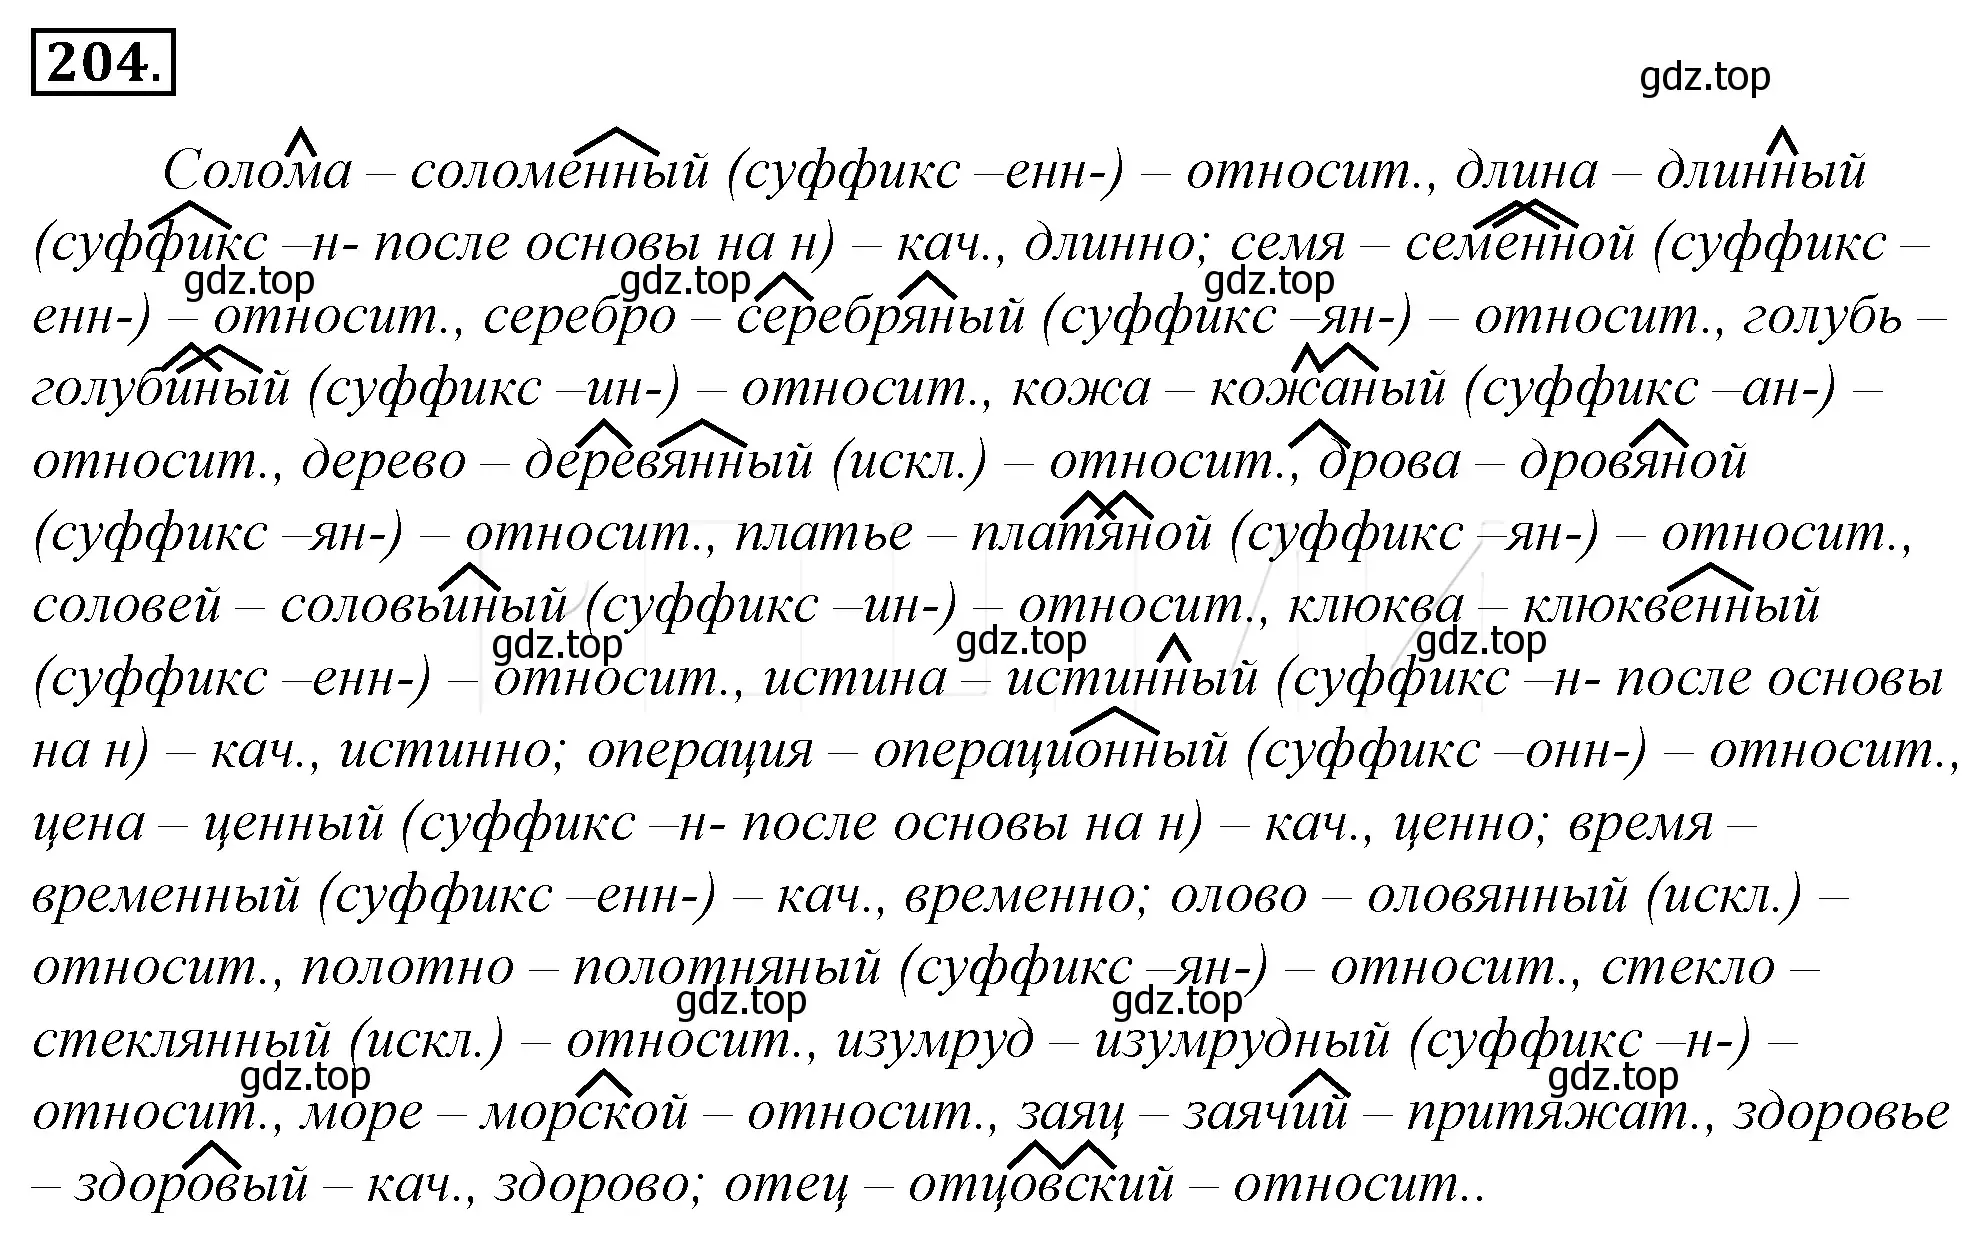 Решение 4. номер 228 (страница 213) гдз по русскому языку 10-11 класс Гольцова, Шамшин, учебник 1 часть